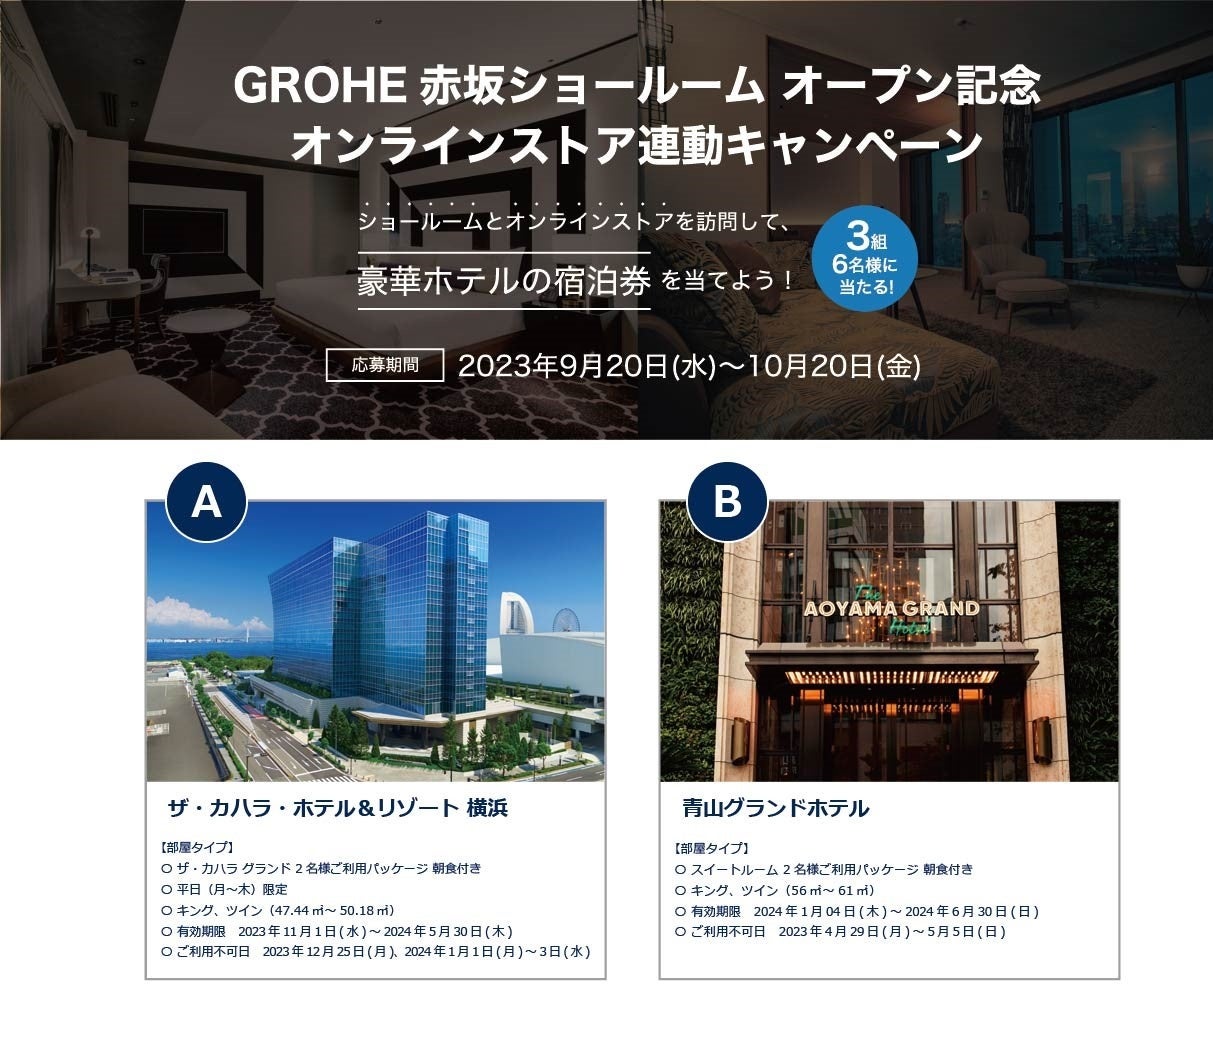 GROHE赤坂ショールーム オープン記念 「オンラインストア連動キャンペーン」のサブ画像2